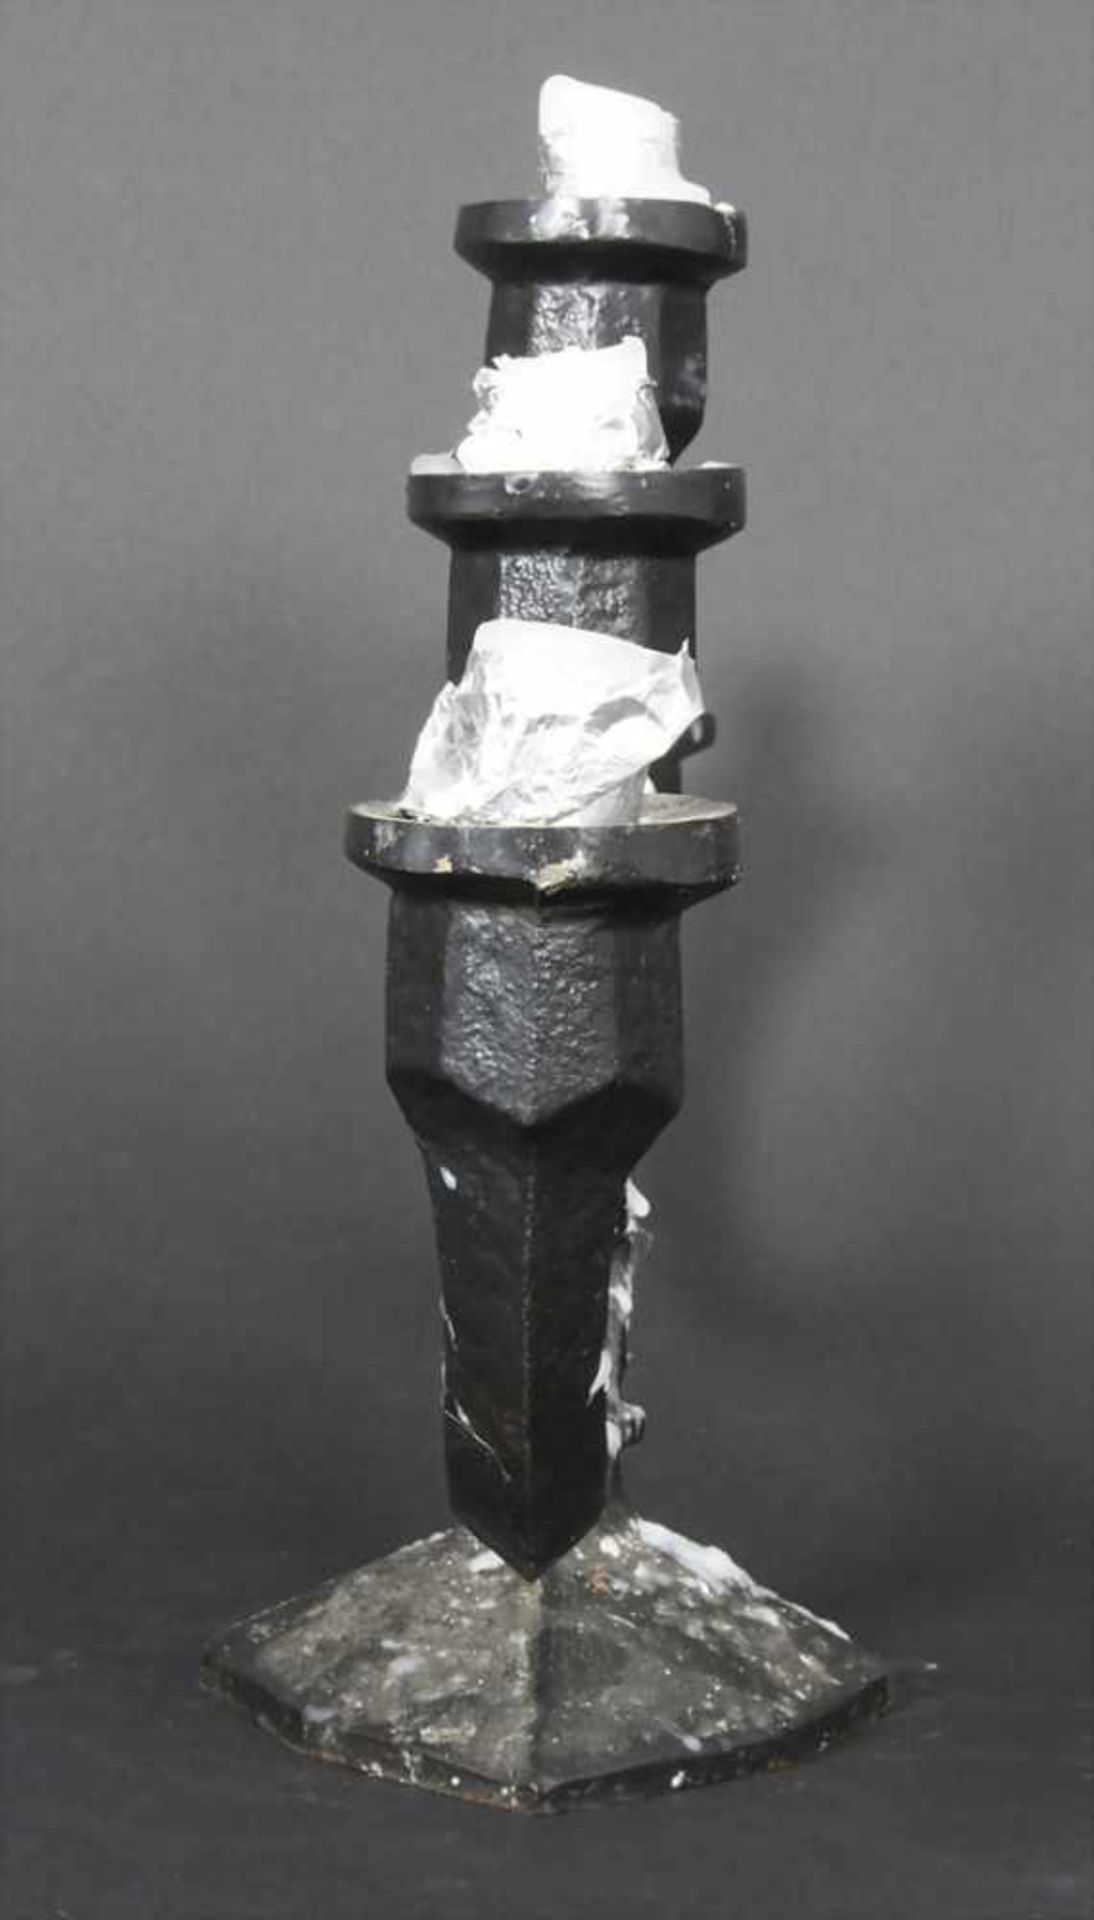 5-flammiger Kerzenleuchter / A 5 flamed candlestickMaterial: Gusseisen, Maße: H. 23 cm, B. 48 cm, - Bild 2 aus 4